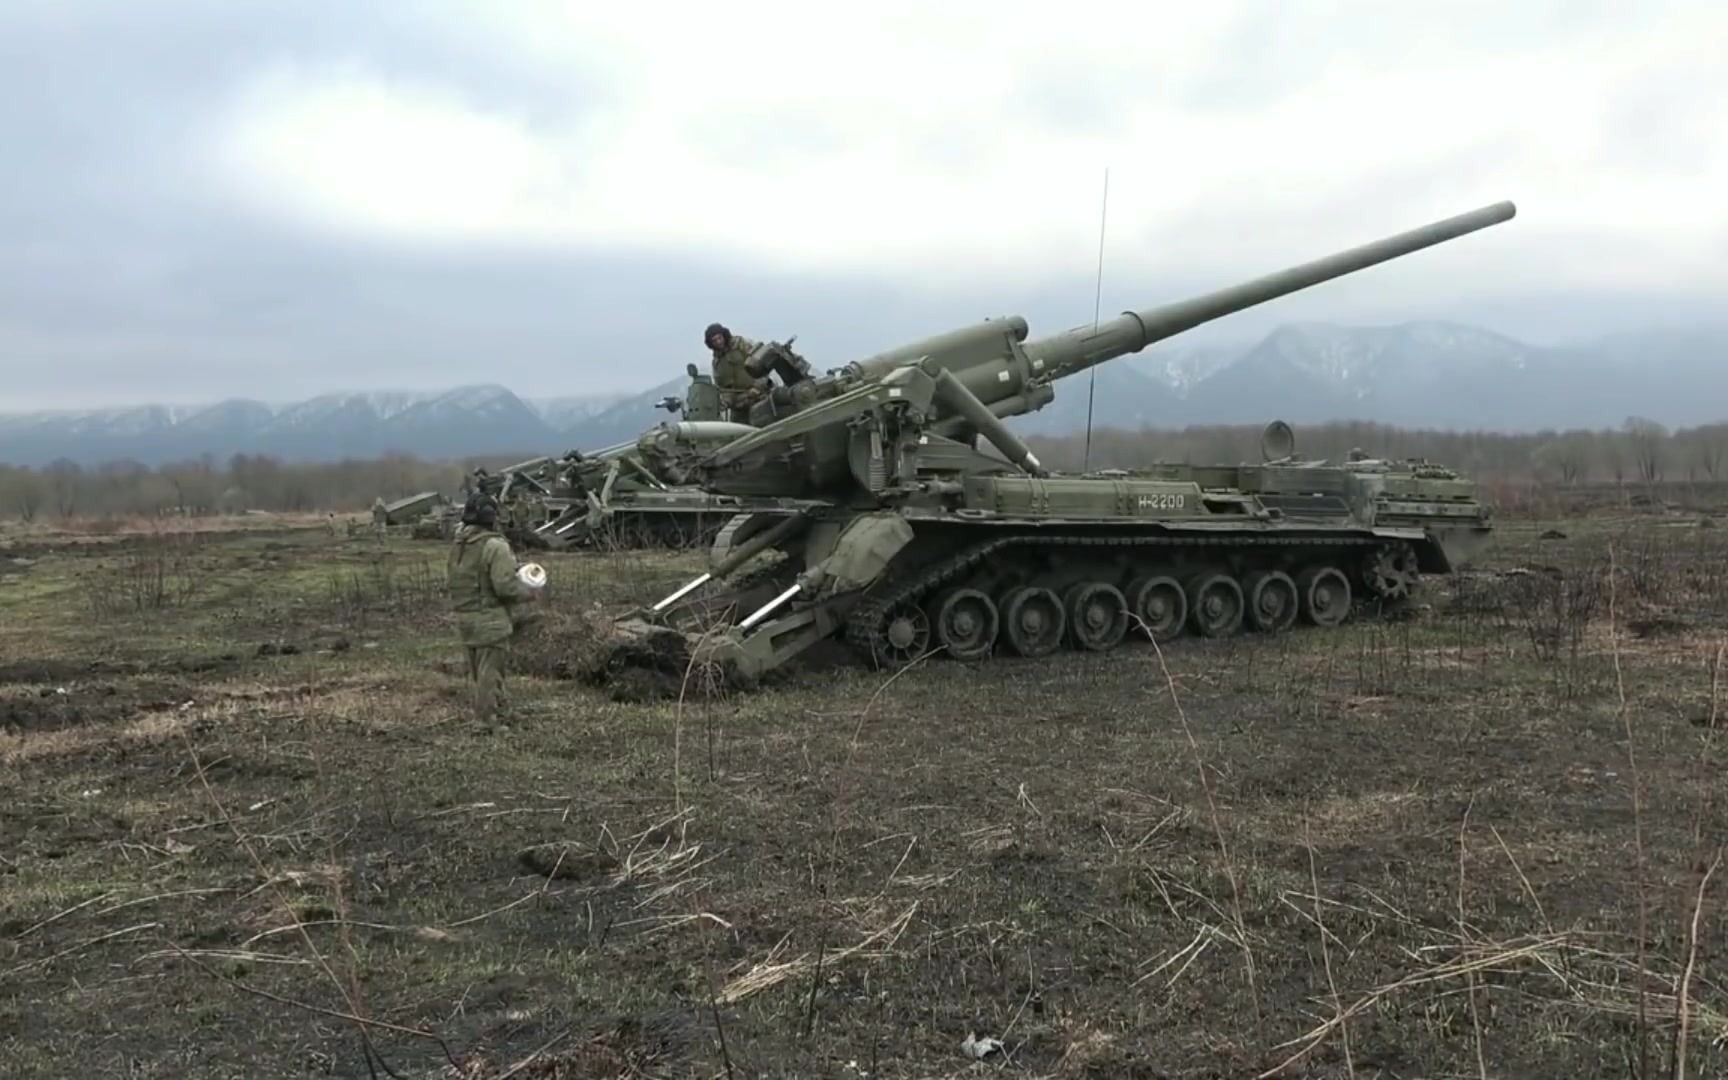 240毫米榴弹炮俄罗斯图片